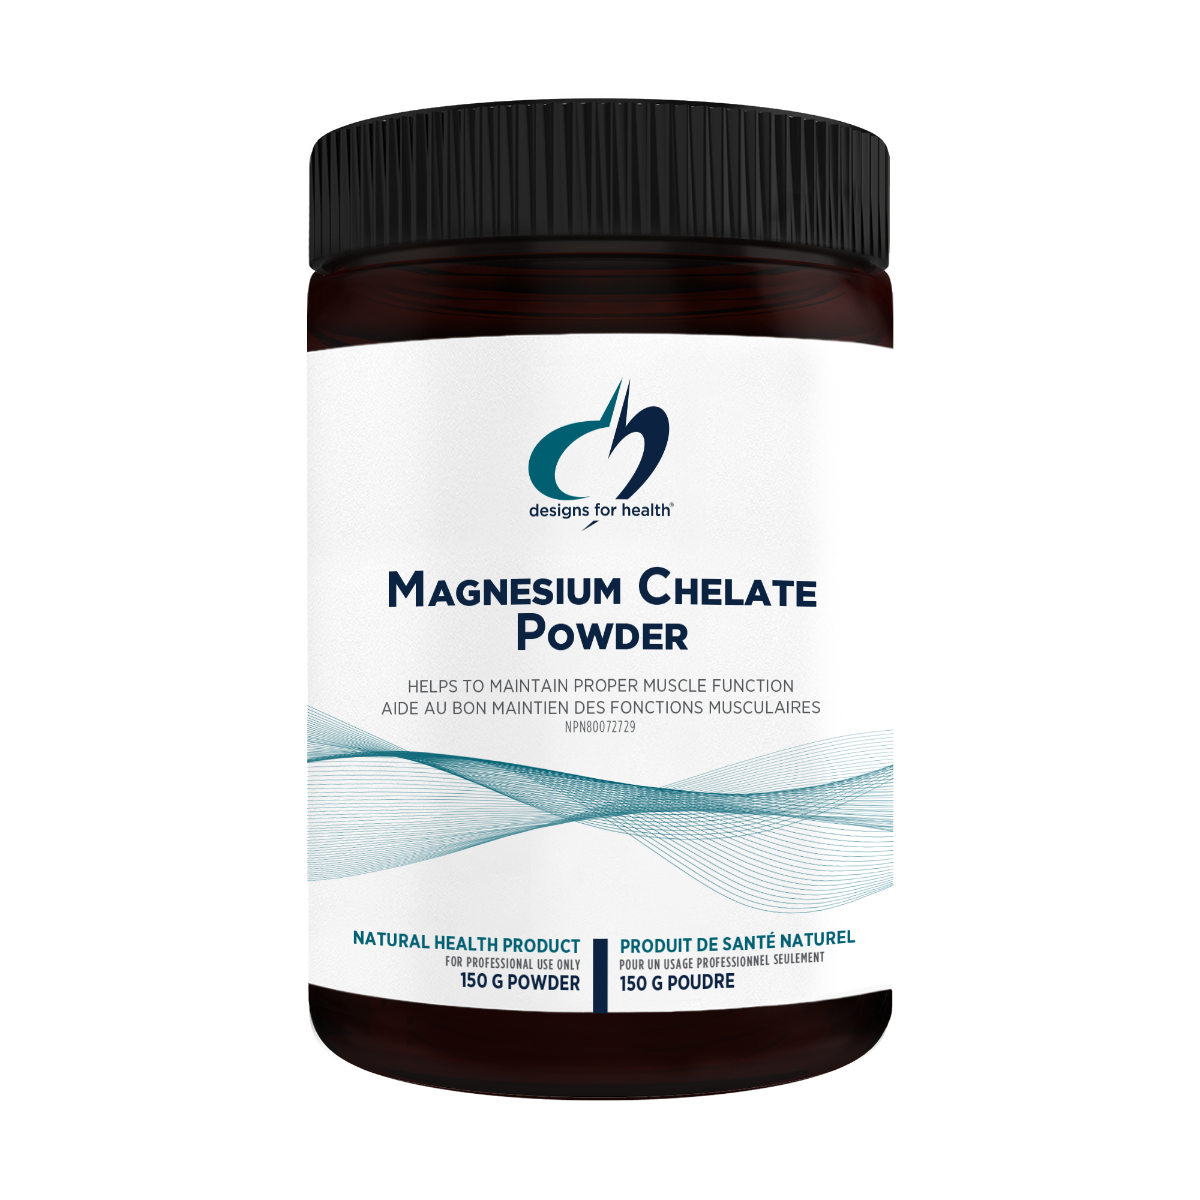 Poudre de Magnesium Chelaté